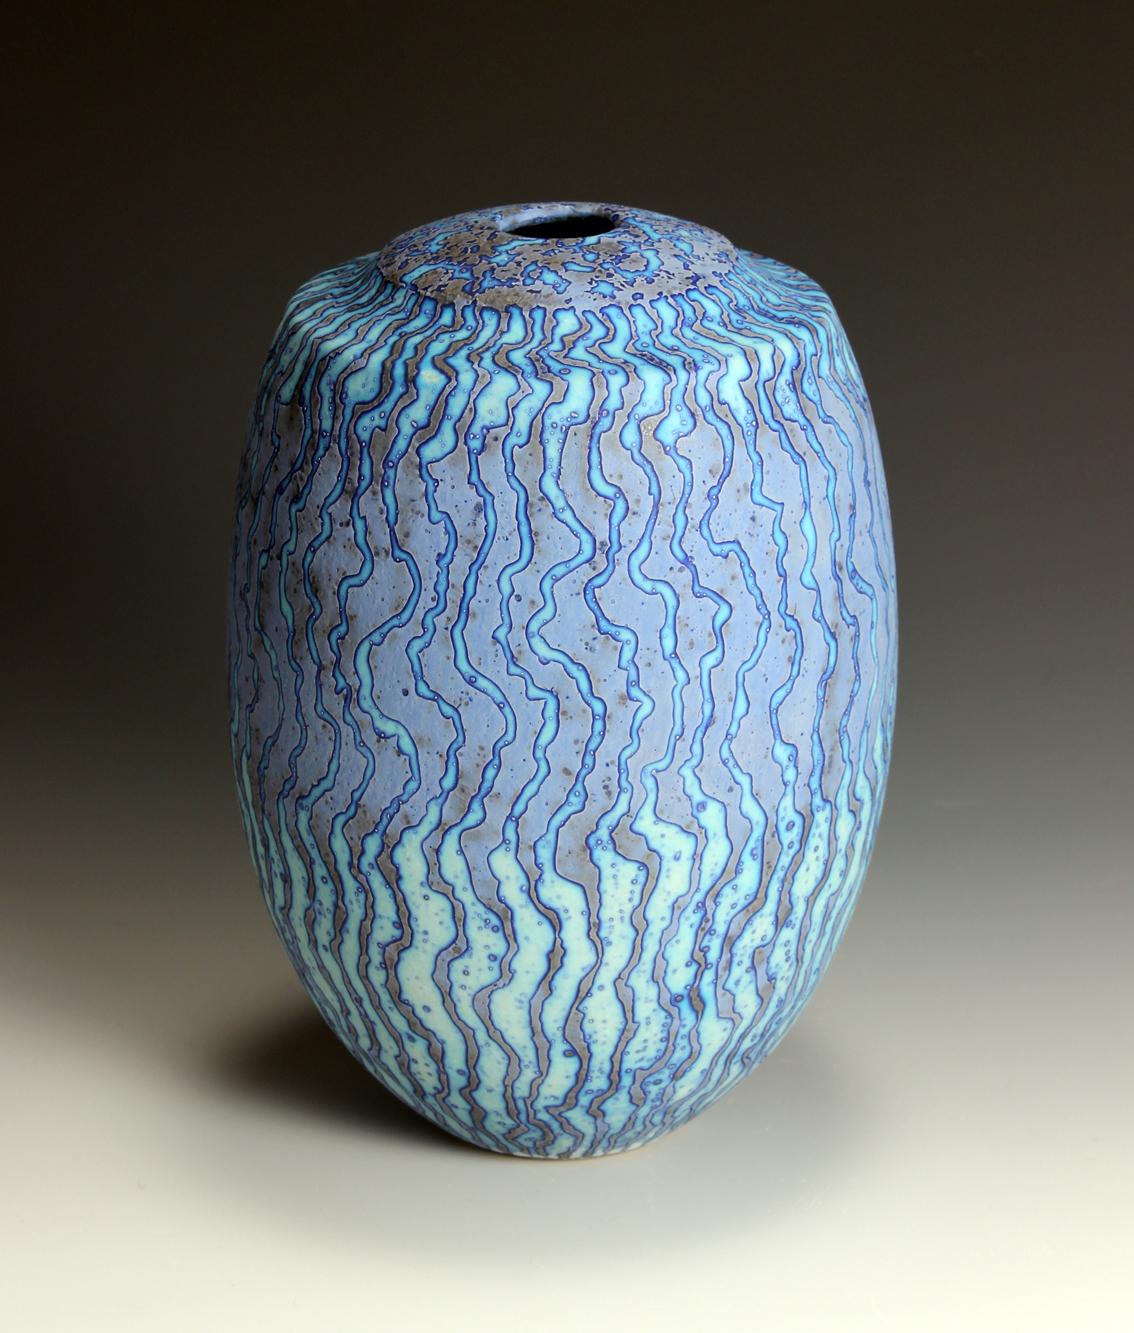 Peter Beard. A Vase in a Cobalt Wax resist glaze

22 cm high, 15 cm wide
 
2022
 
